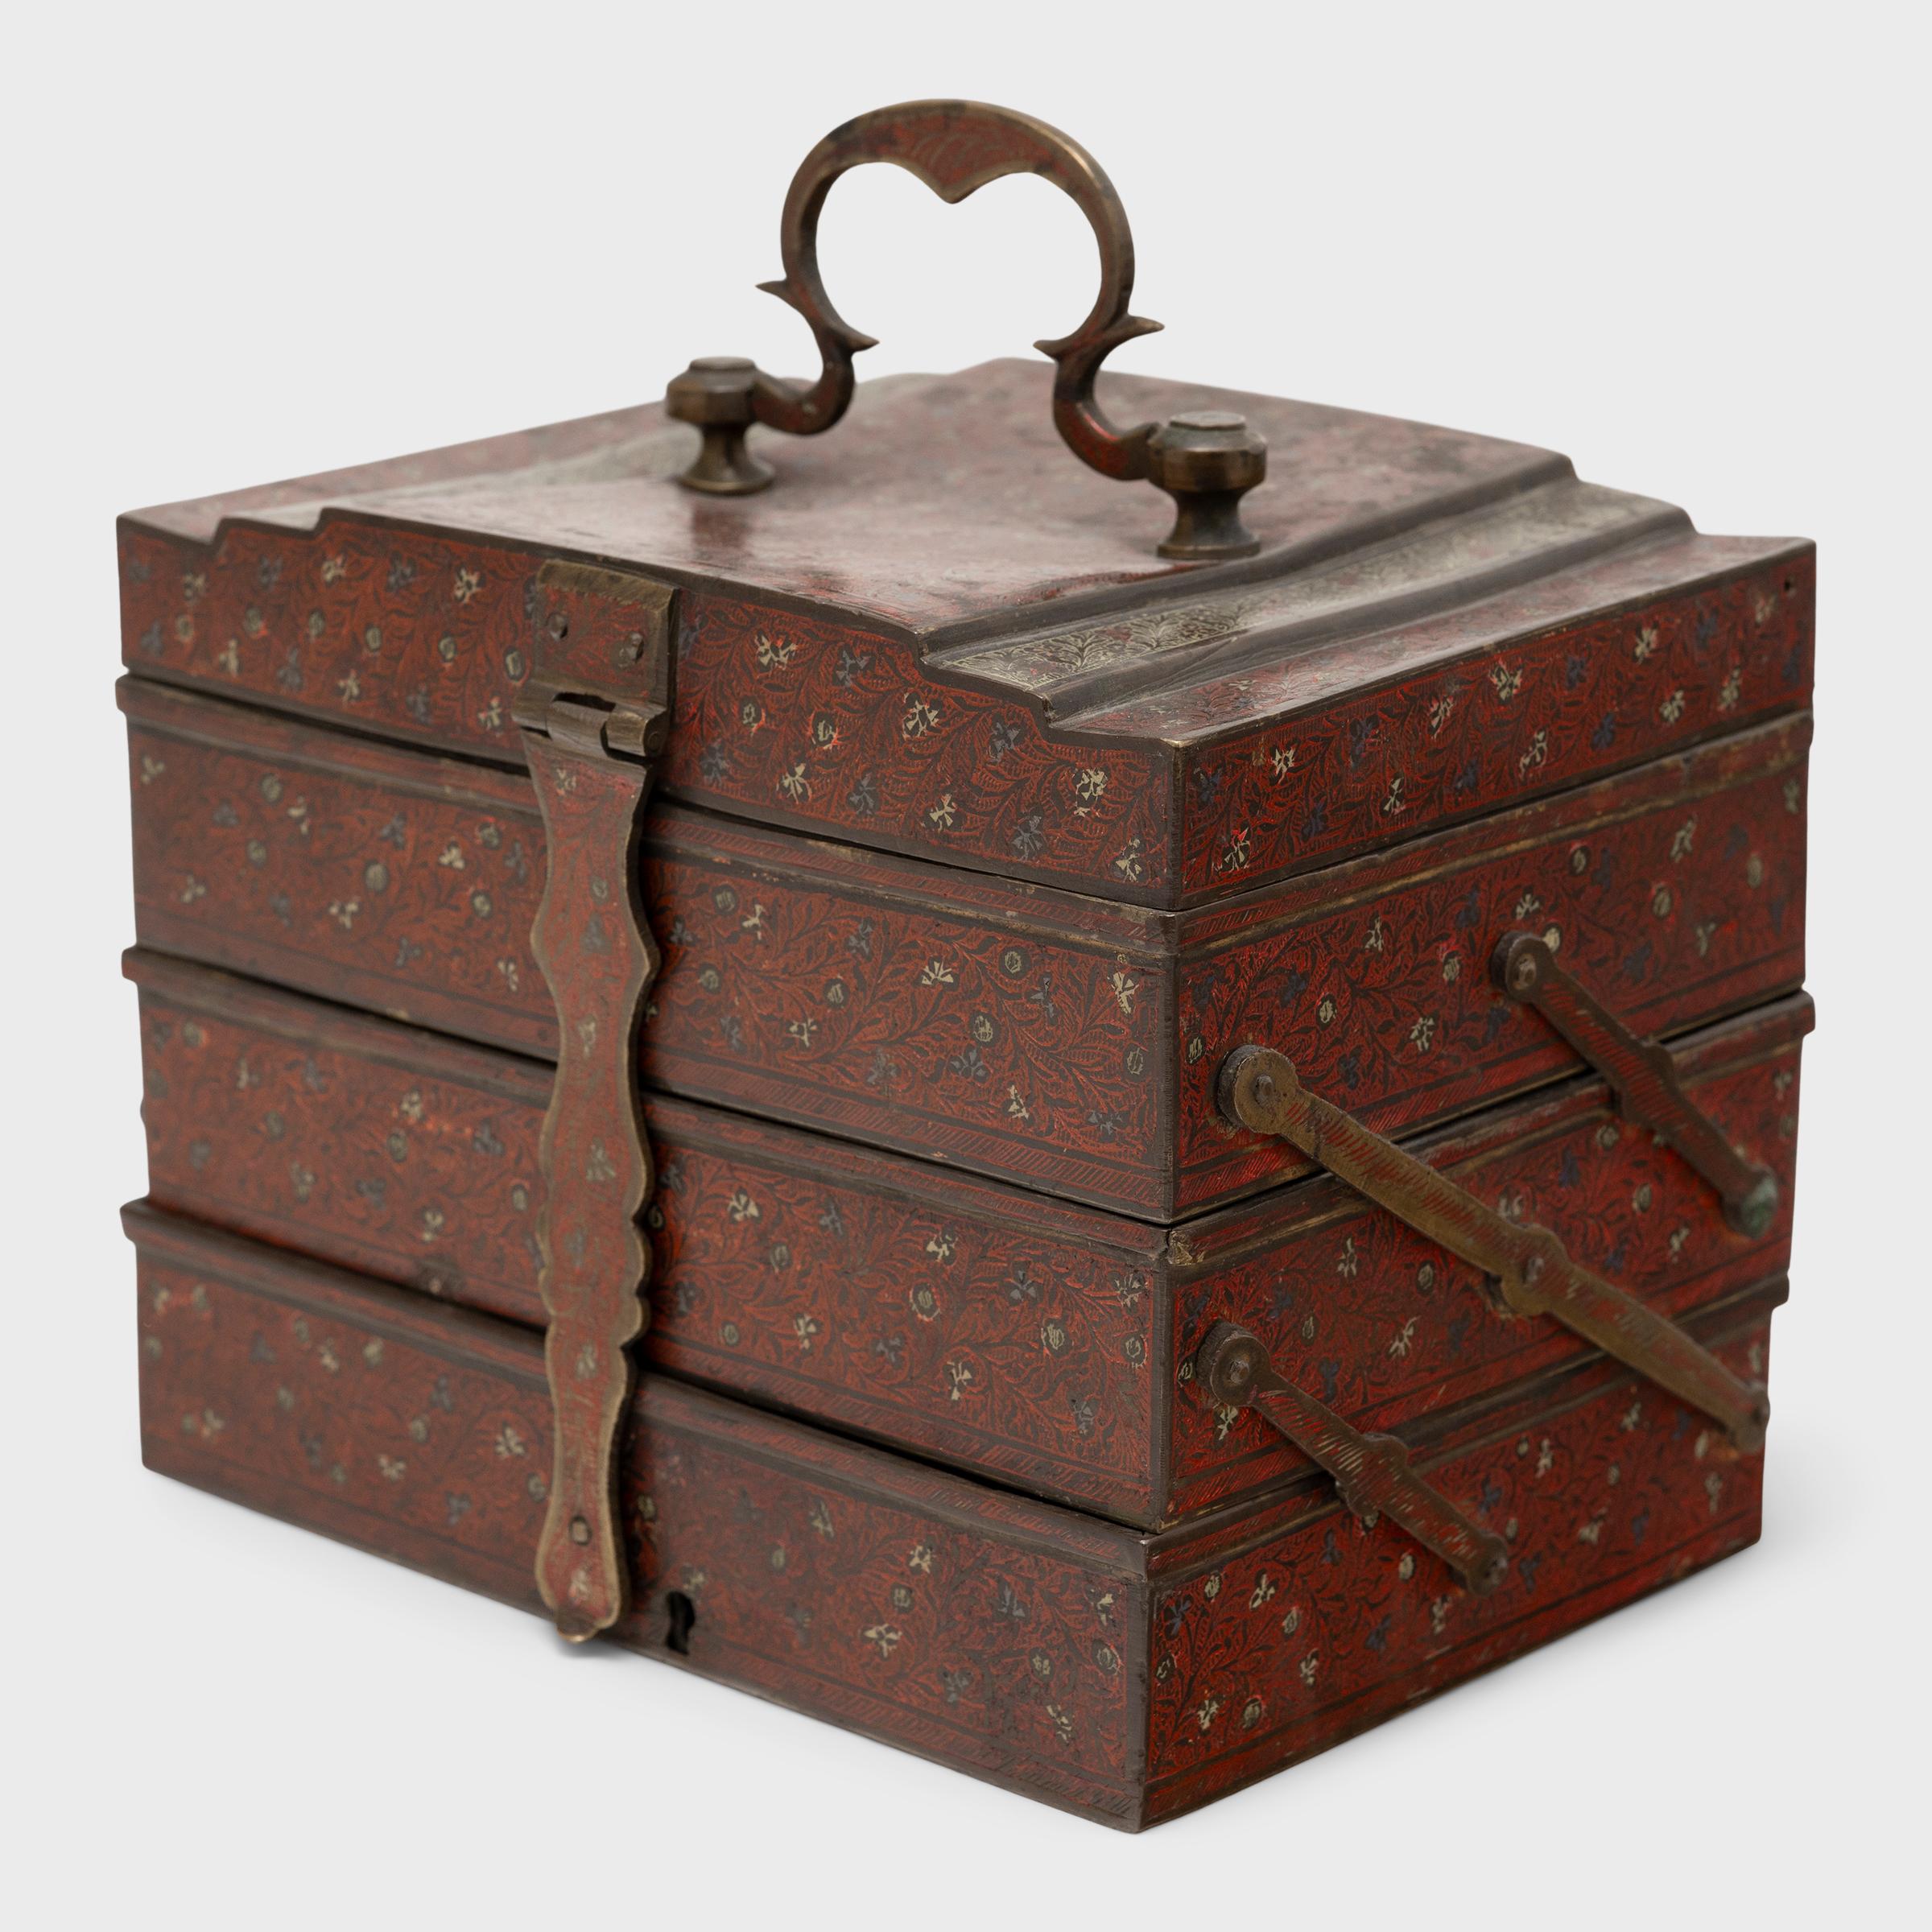 Cette boîte indienne à trois niveaux a été fabriquée au début du XXe siècle et était à l'origine utilisée comme coffre de toilette ou boîte à bijoux. Gravée d'un élégant motif floral, la boîte en laiton est recouverte d'un riche pigment rouge aux